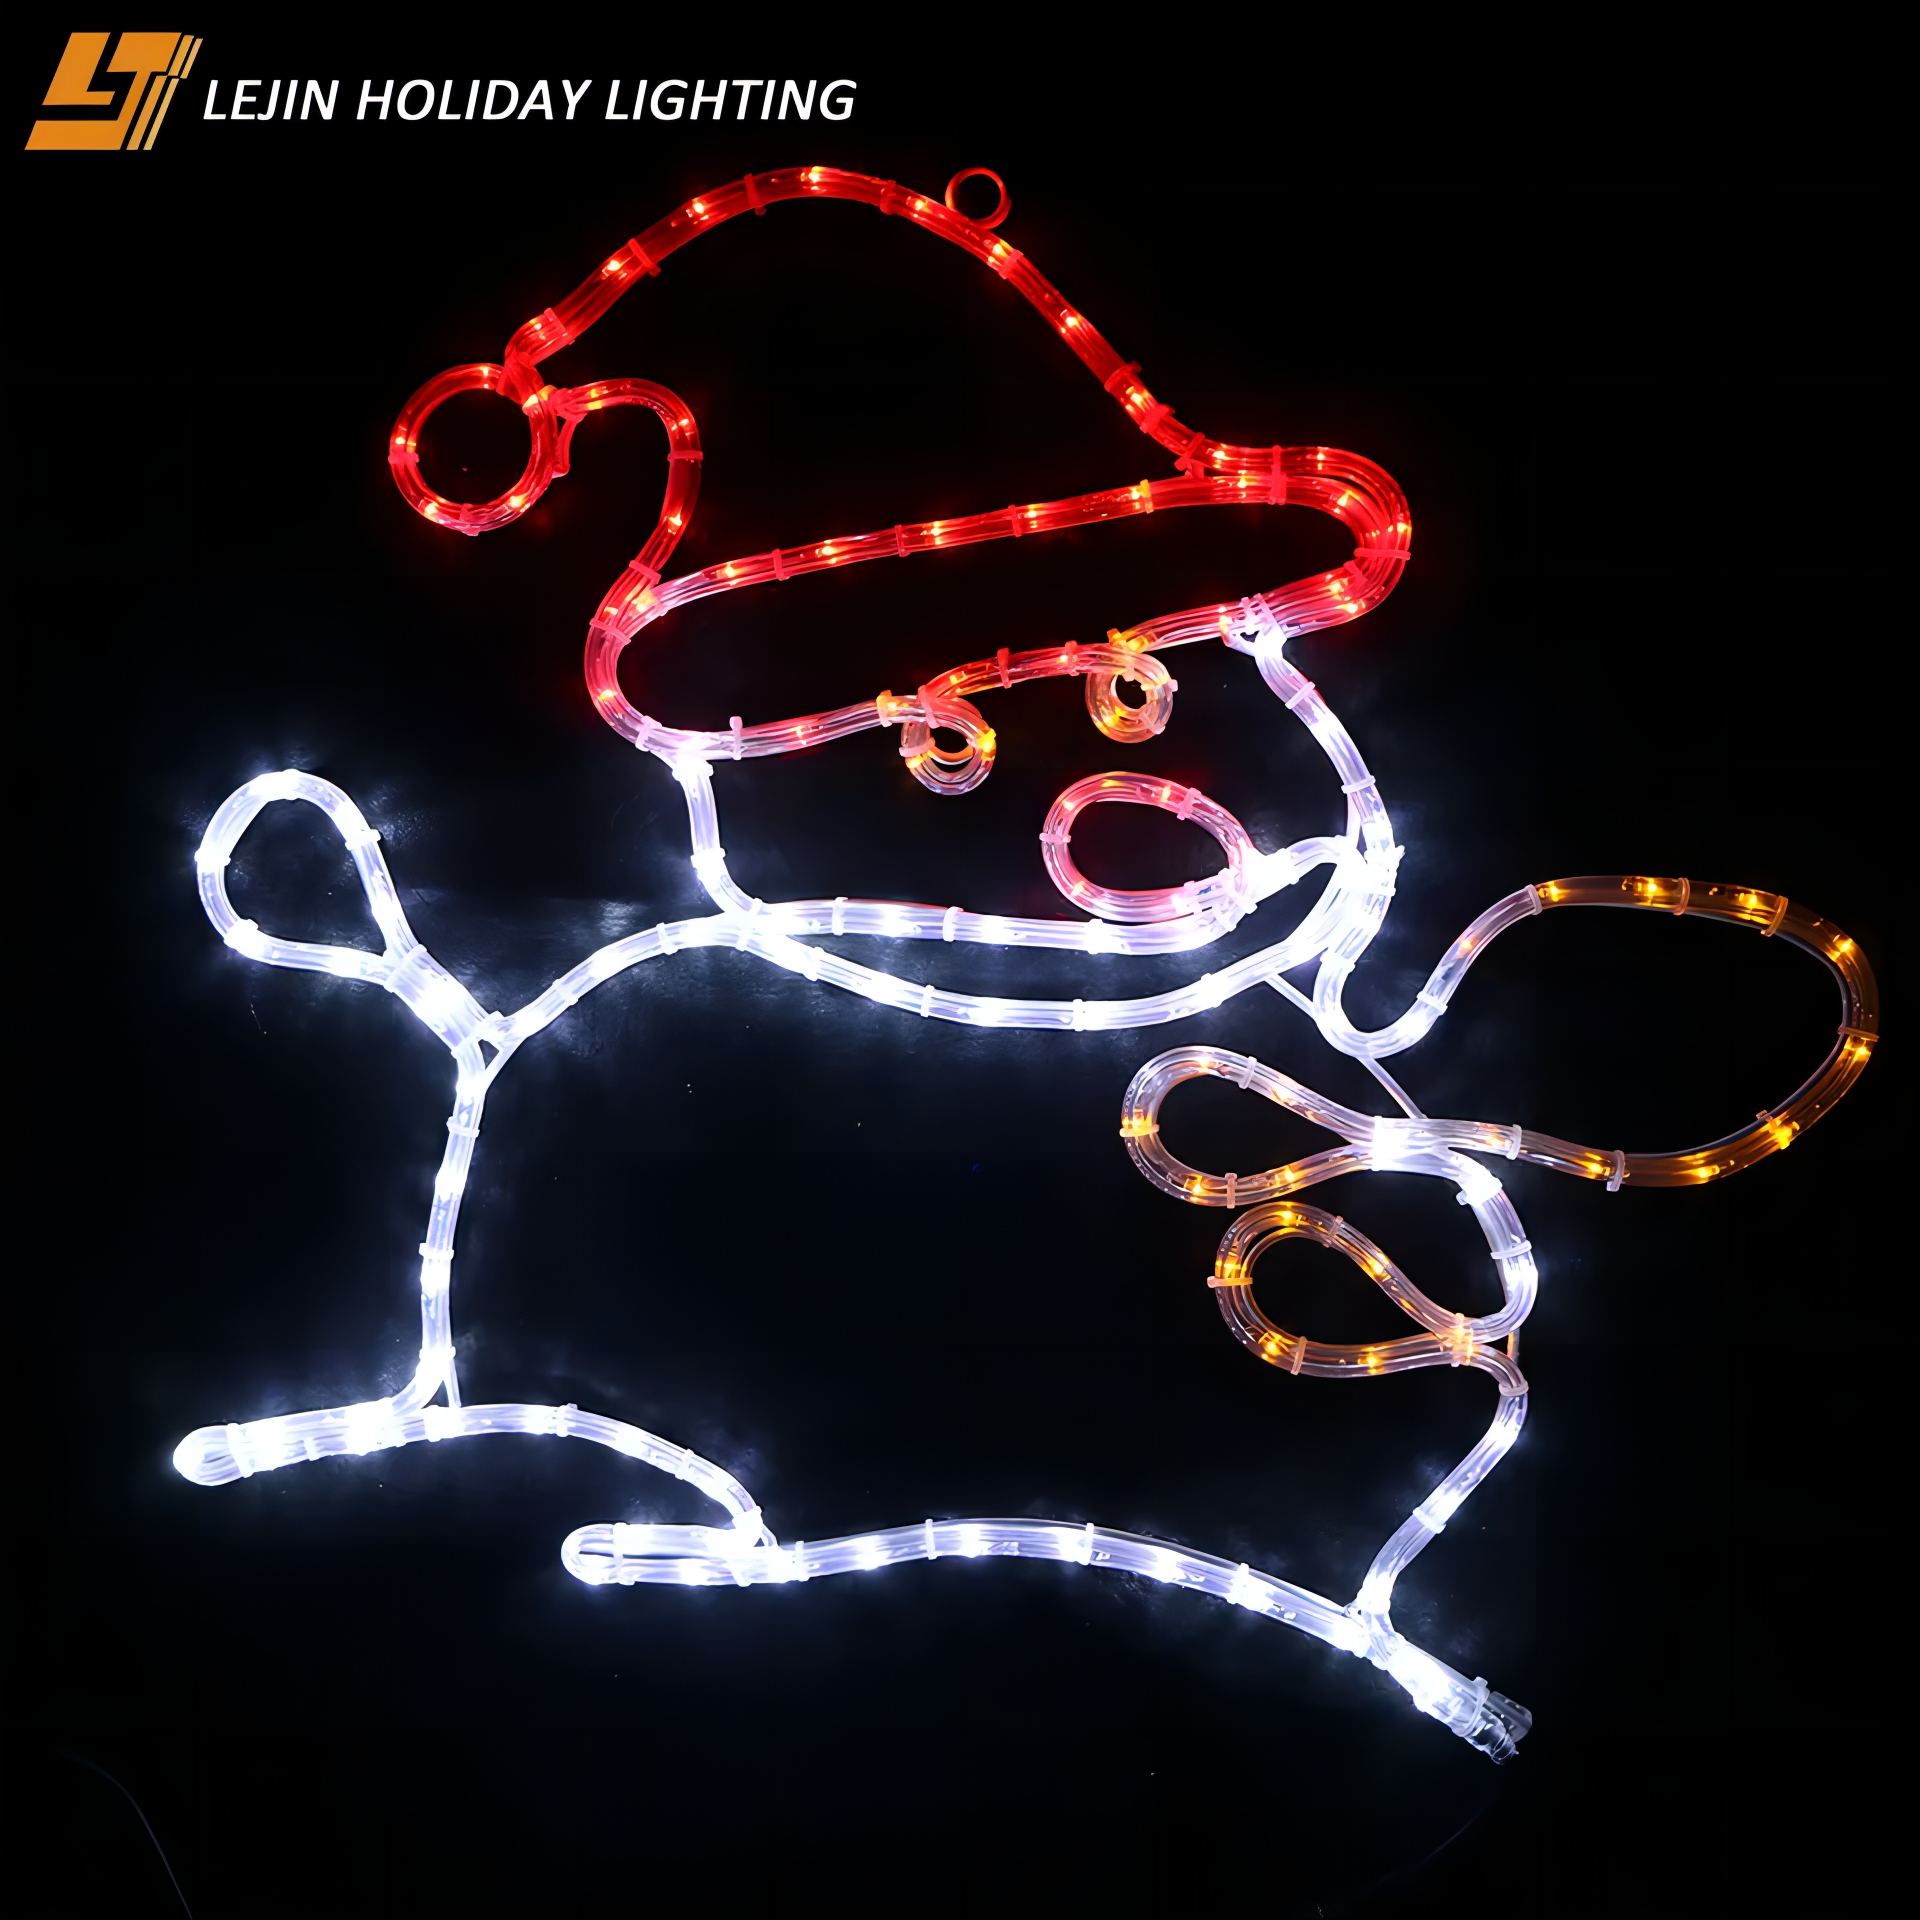 2d snowman modeling lights